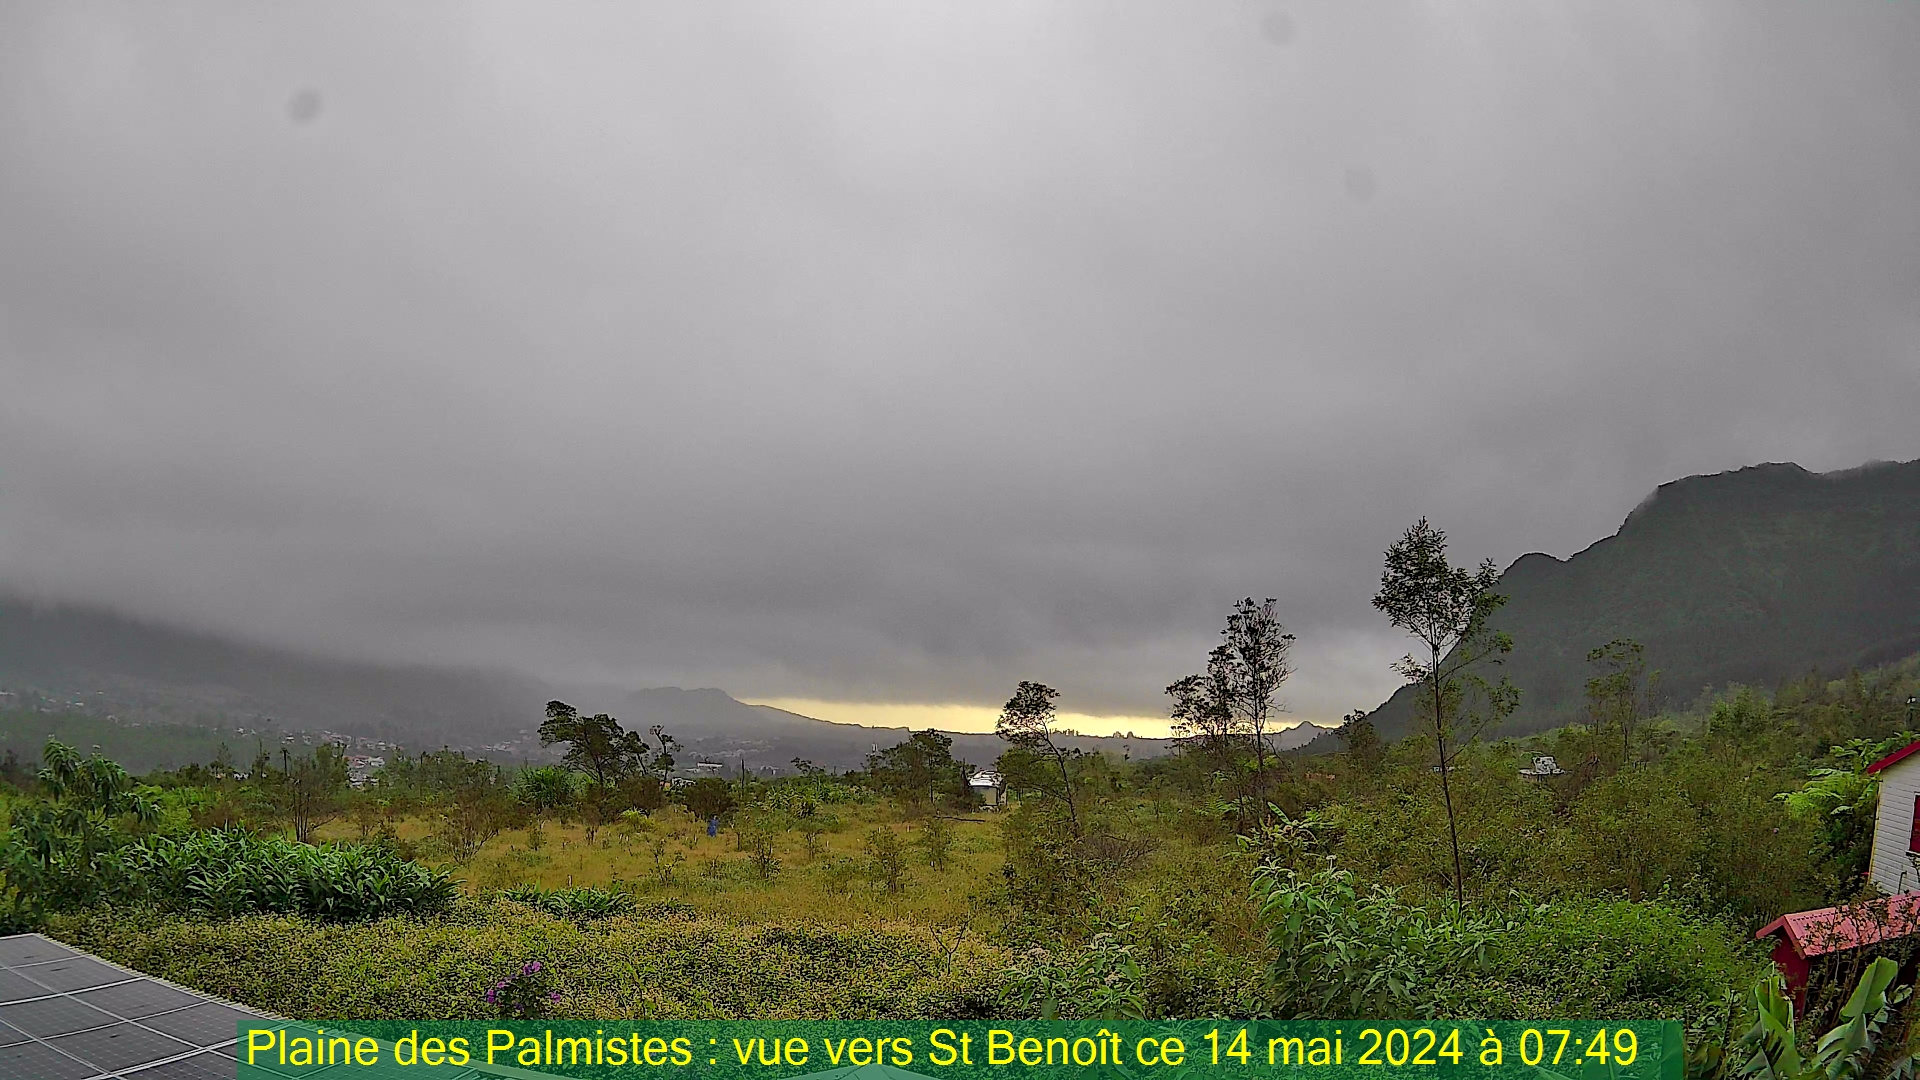 Saint-Denis (Réunion) Mon. 07:50